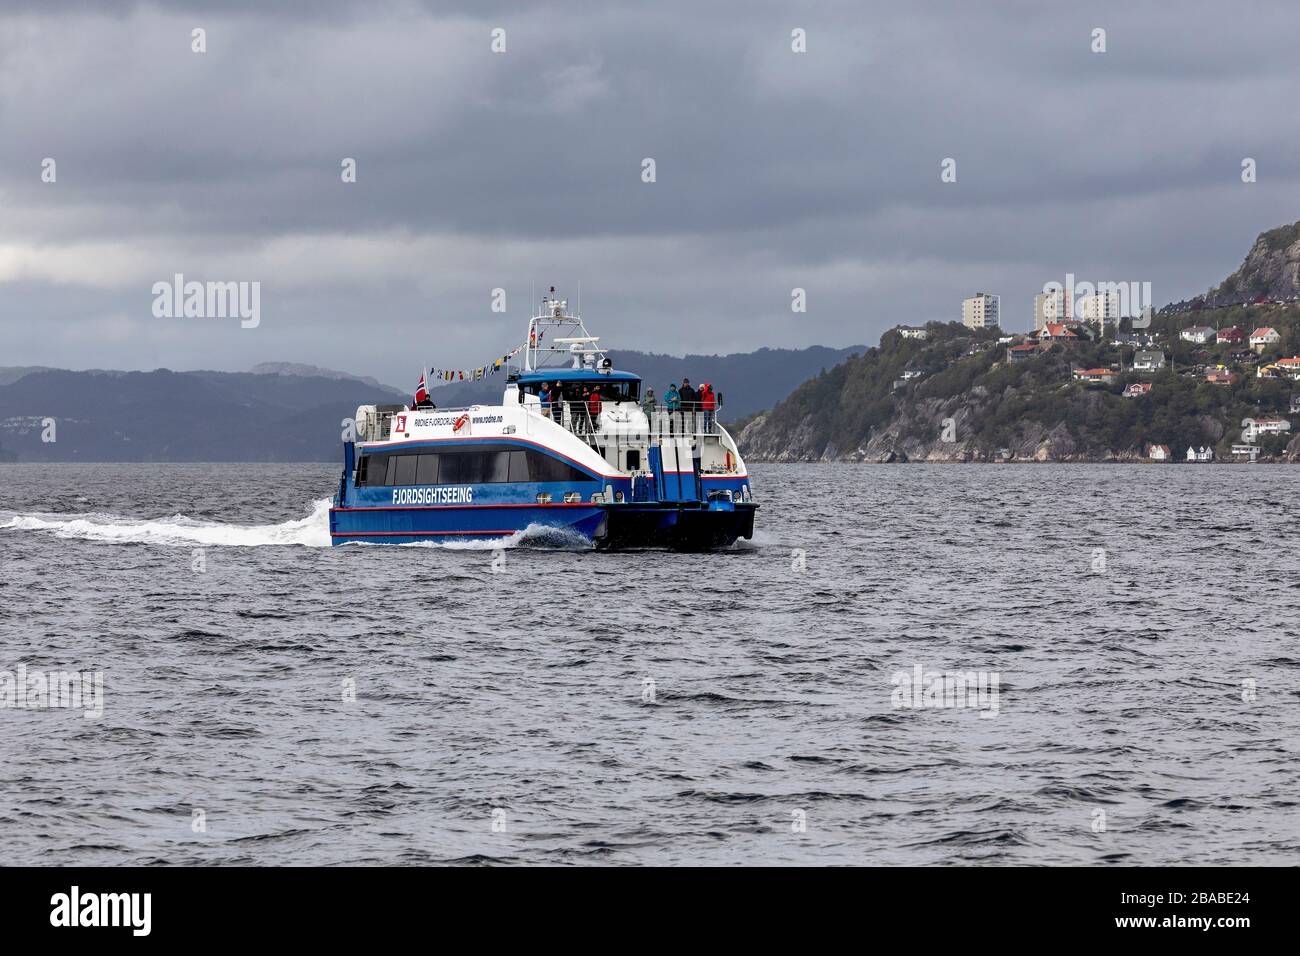 Catamaran pour passagers à grande vitesse RygerCruise à Byfjorden, arrivant dans le port de Bergen, Norvège. Banque D'Images